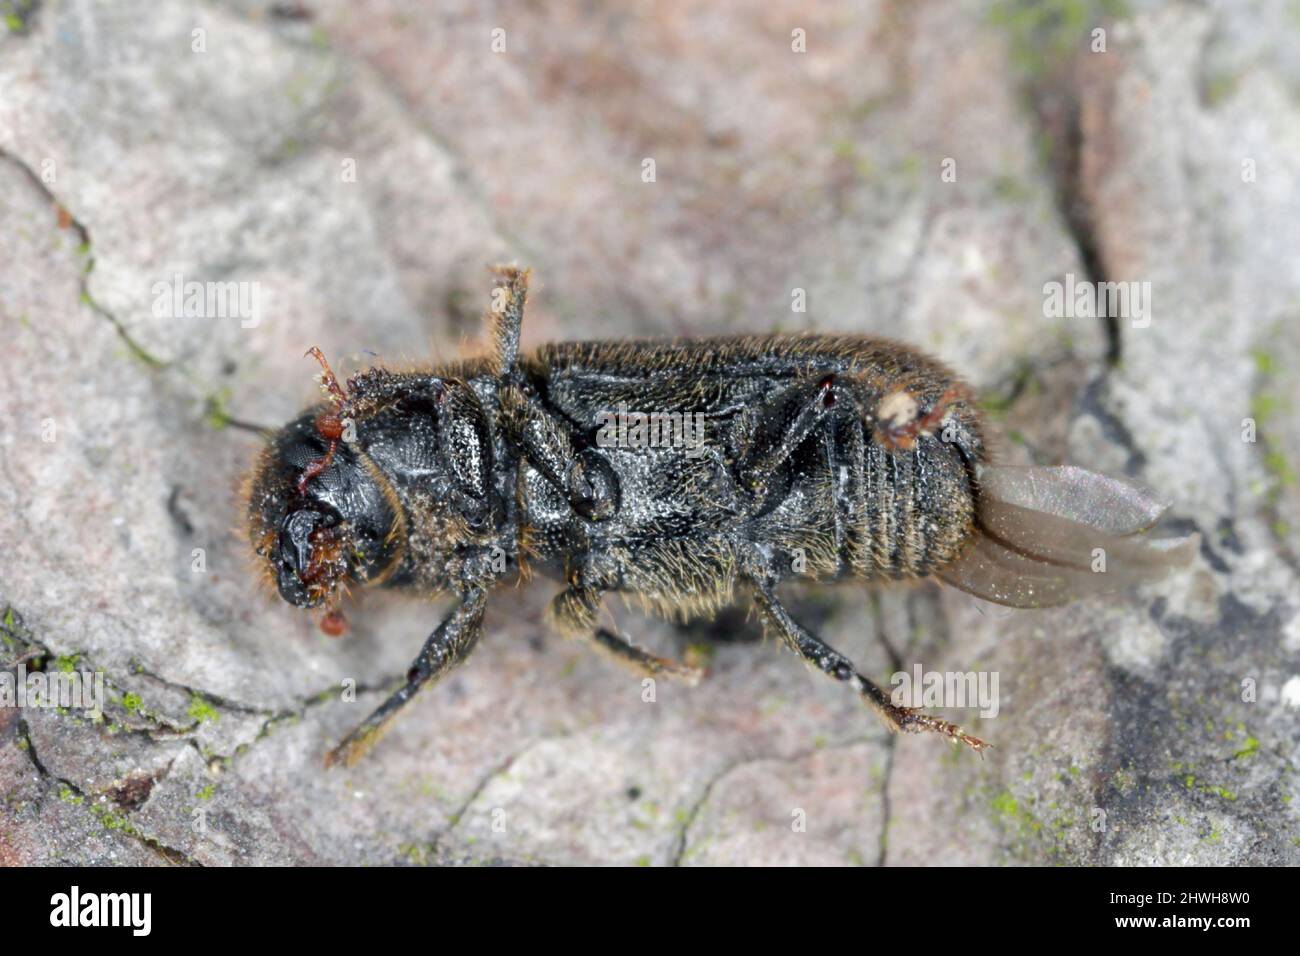 Hylurgus ligniperda - gemeiner Rindenkäfer beschädigte Kiefern in den Wäldern. Käfer auf der Rinde eines Baumes. Stockfoto